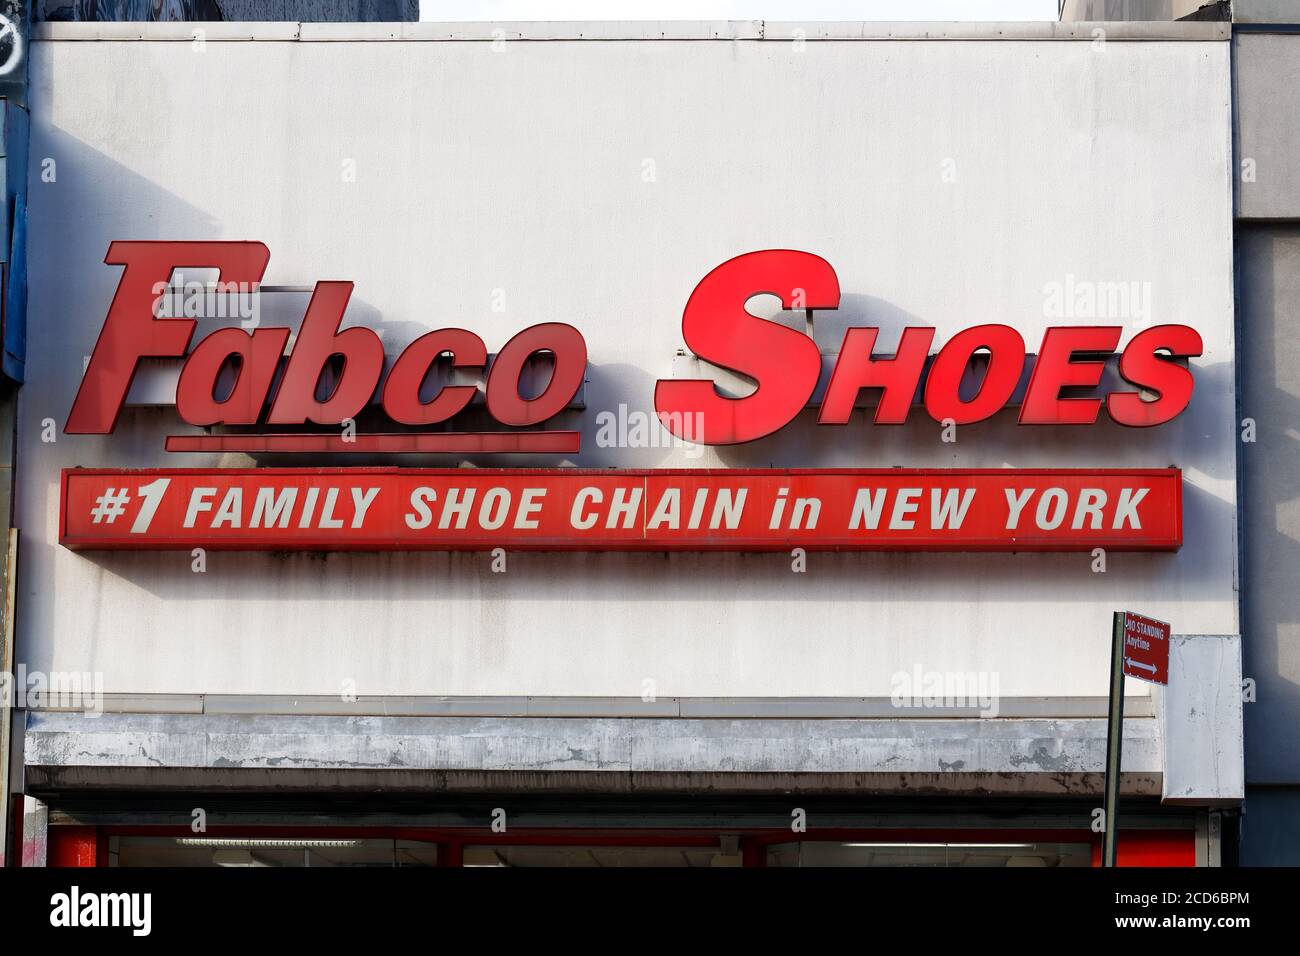 fabco shoe store website